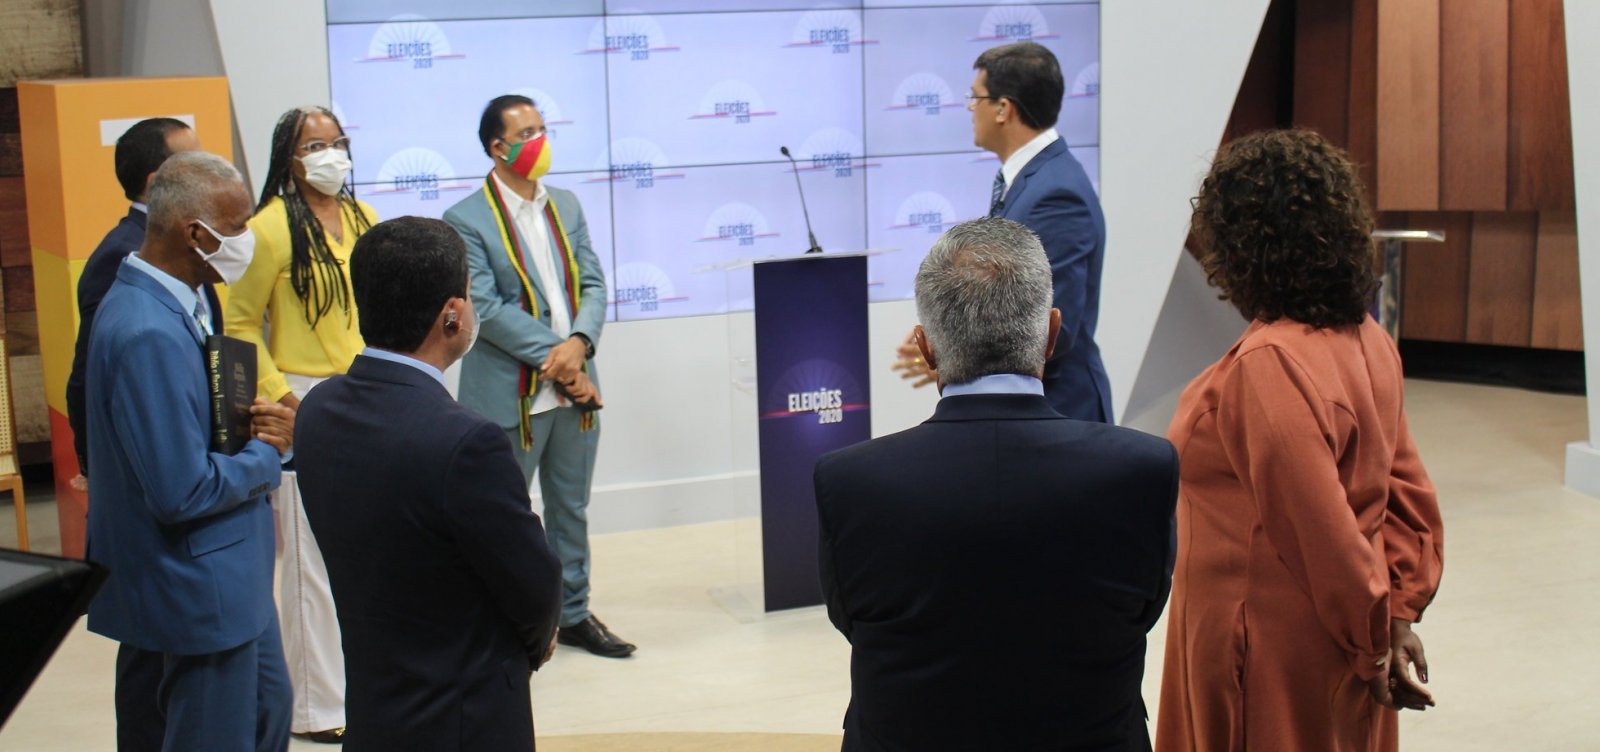 Veja o que aconteceu no segundo debate entre os candidatos à prefeitura de Salvador